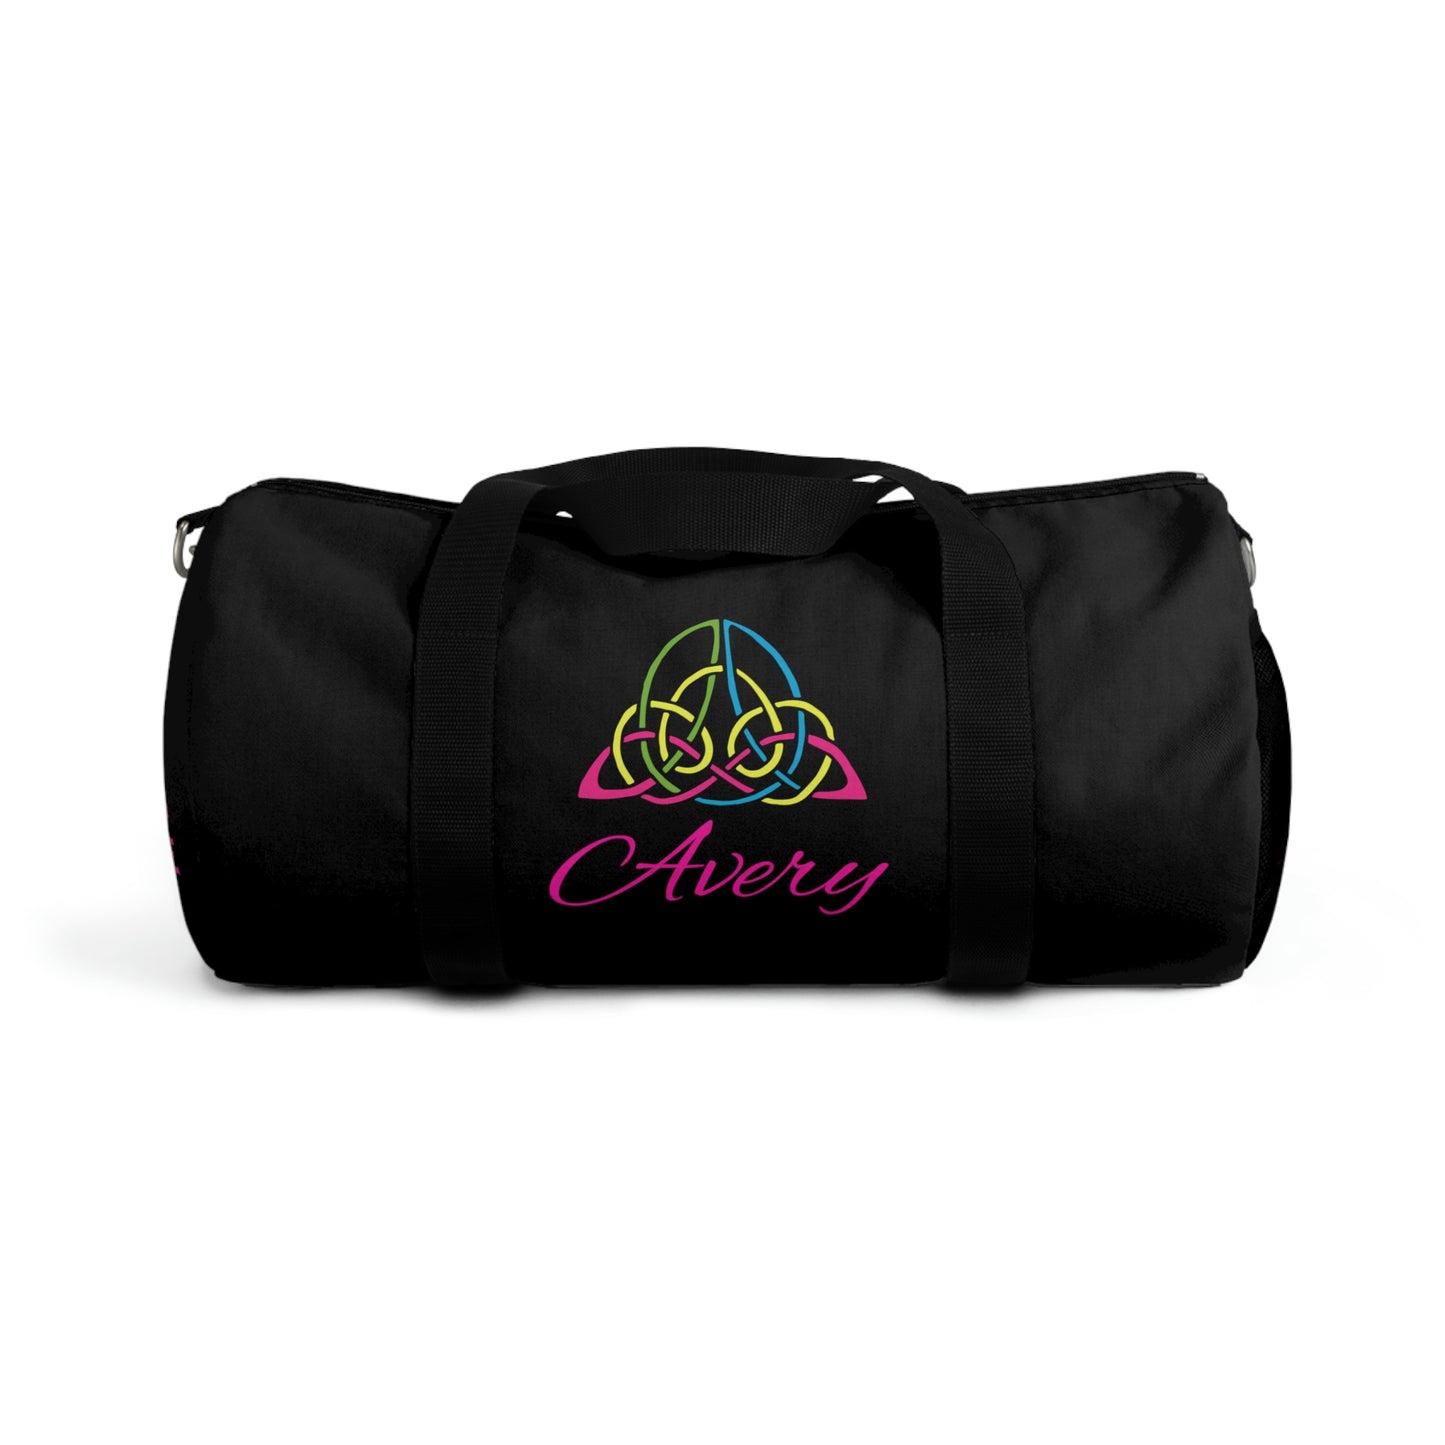 Avery Duffel Bag